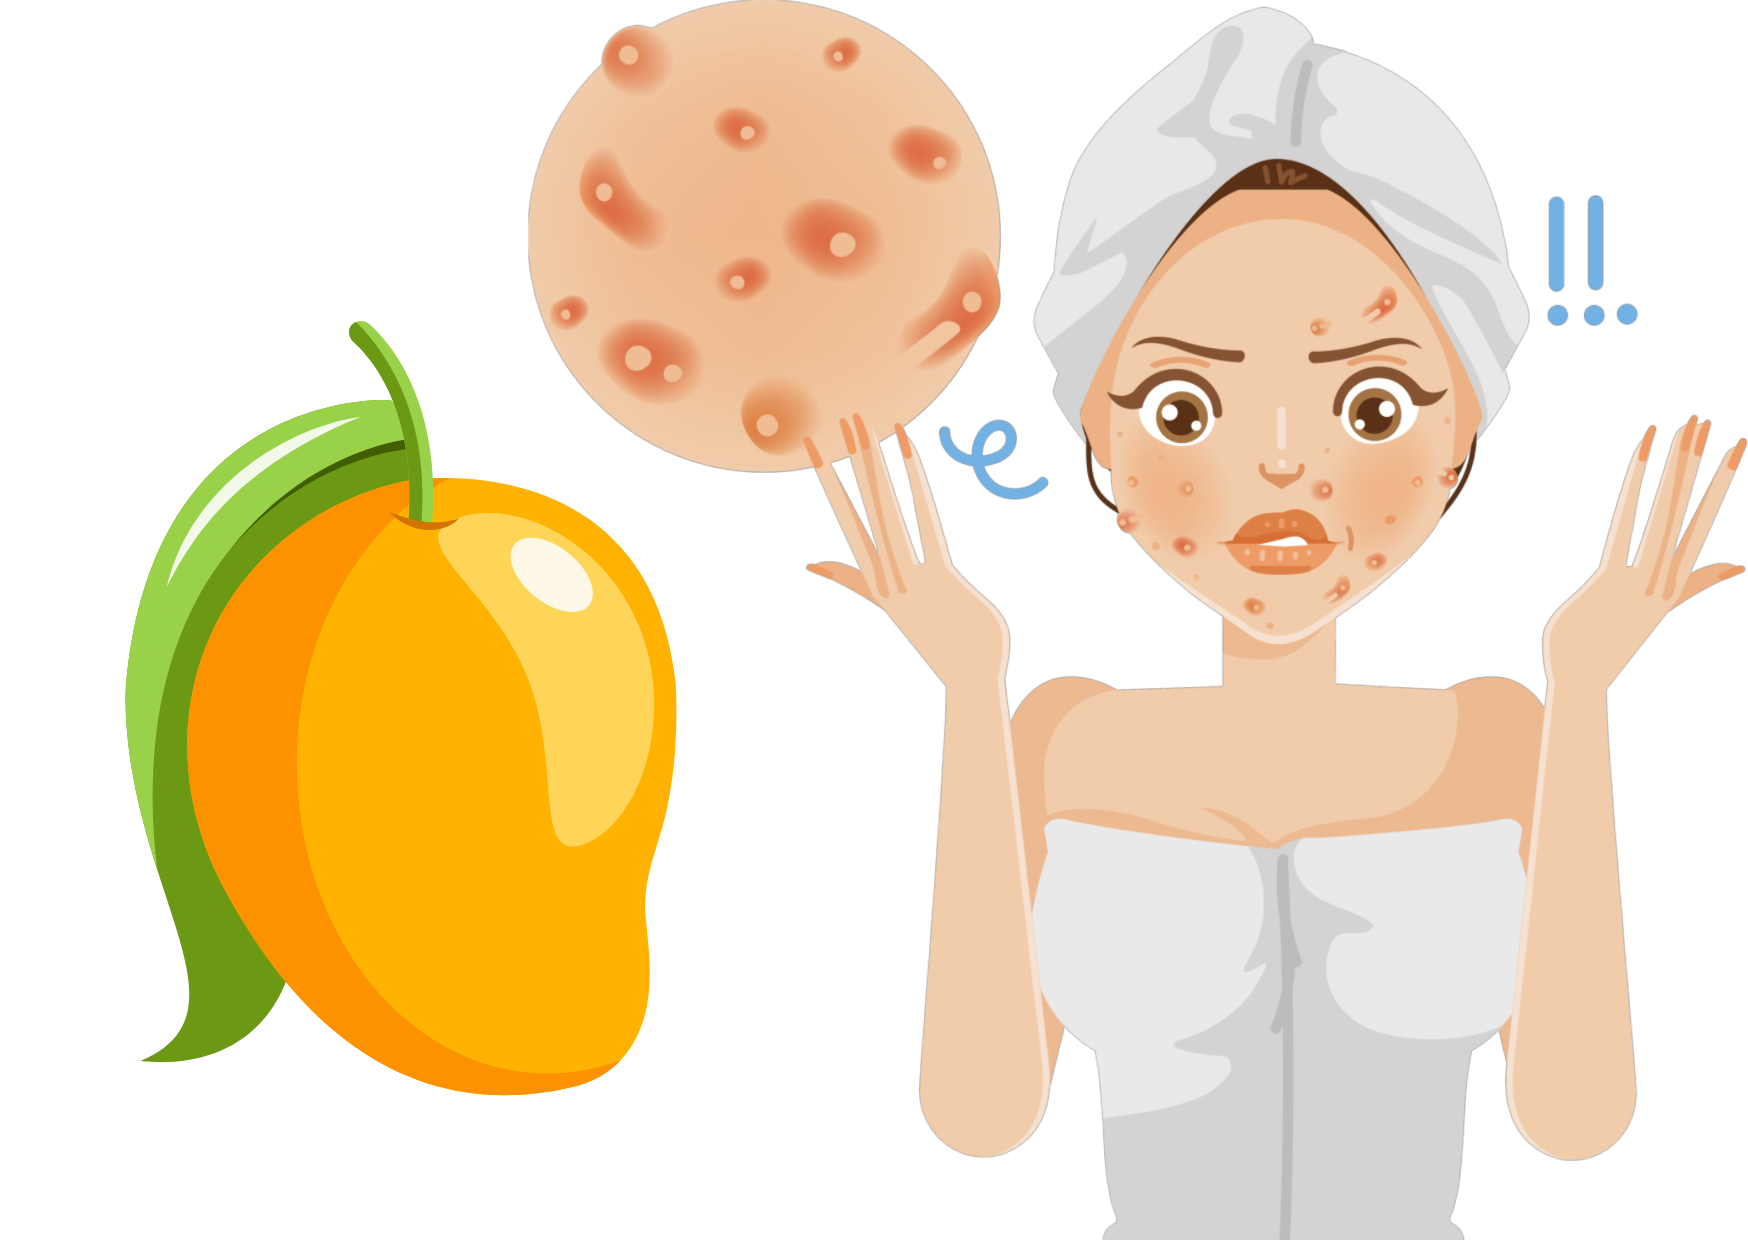 Do mango causes pimples?